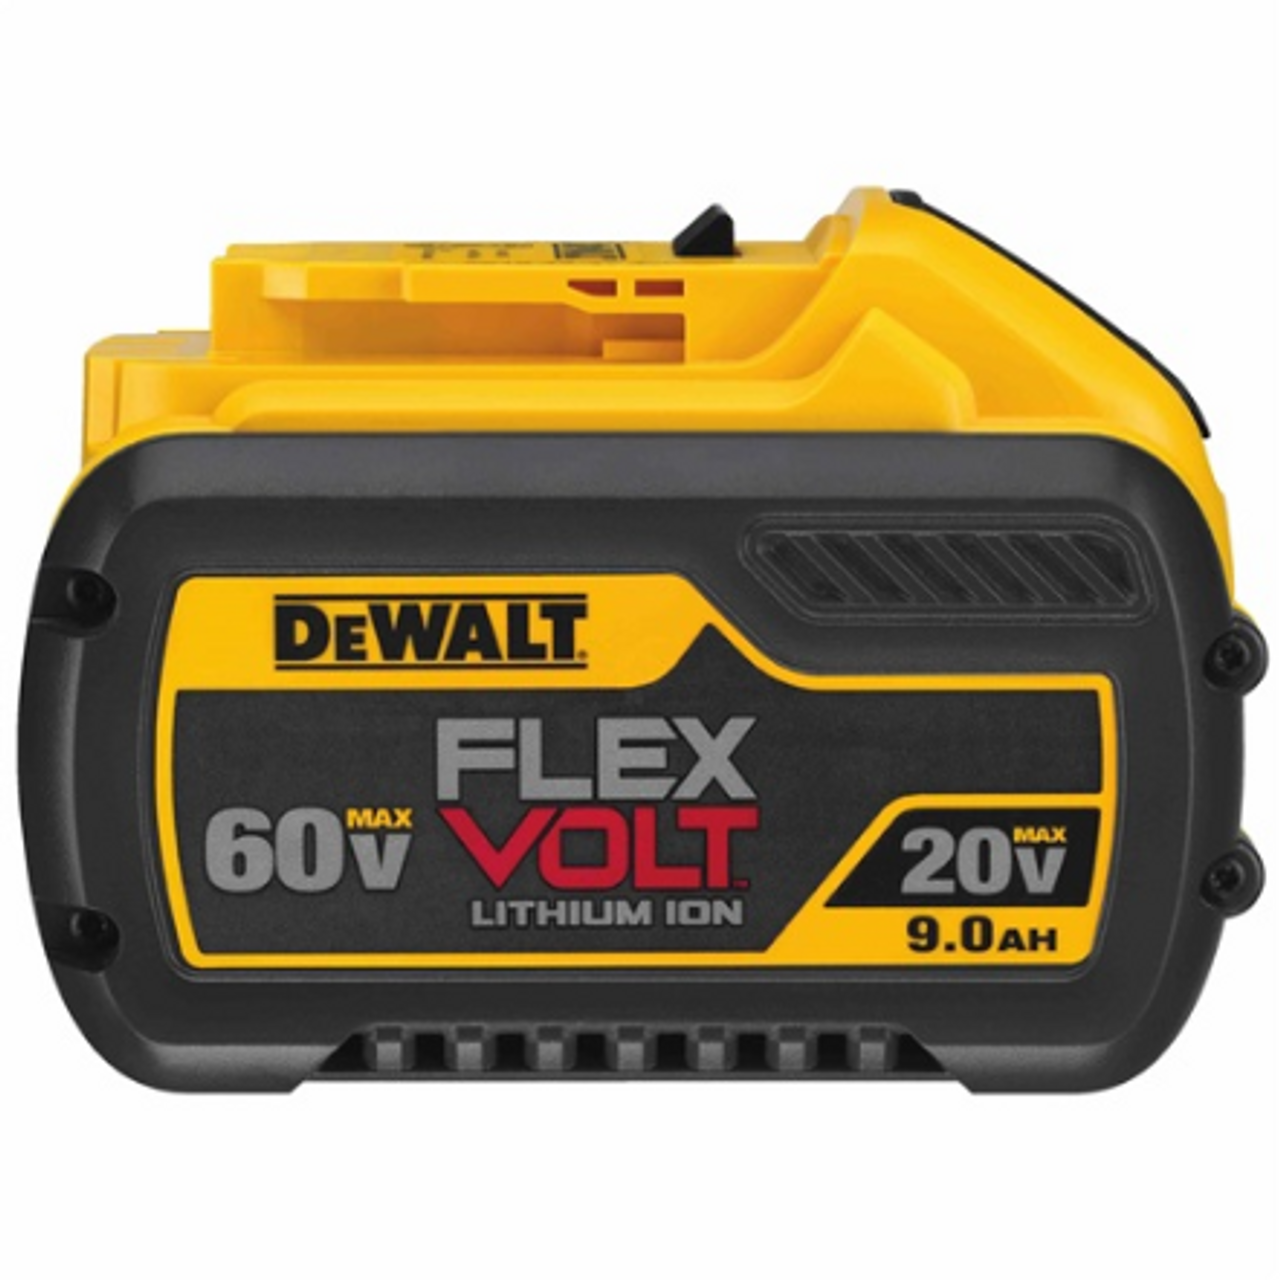 Dewalt 20V/60V MAX Flexvolt 9.0Ah Battery